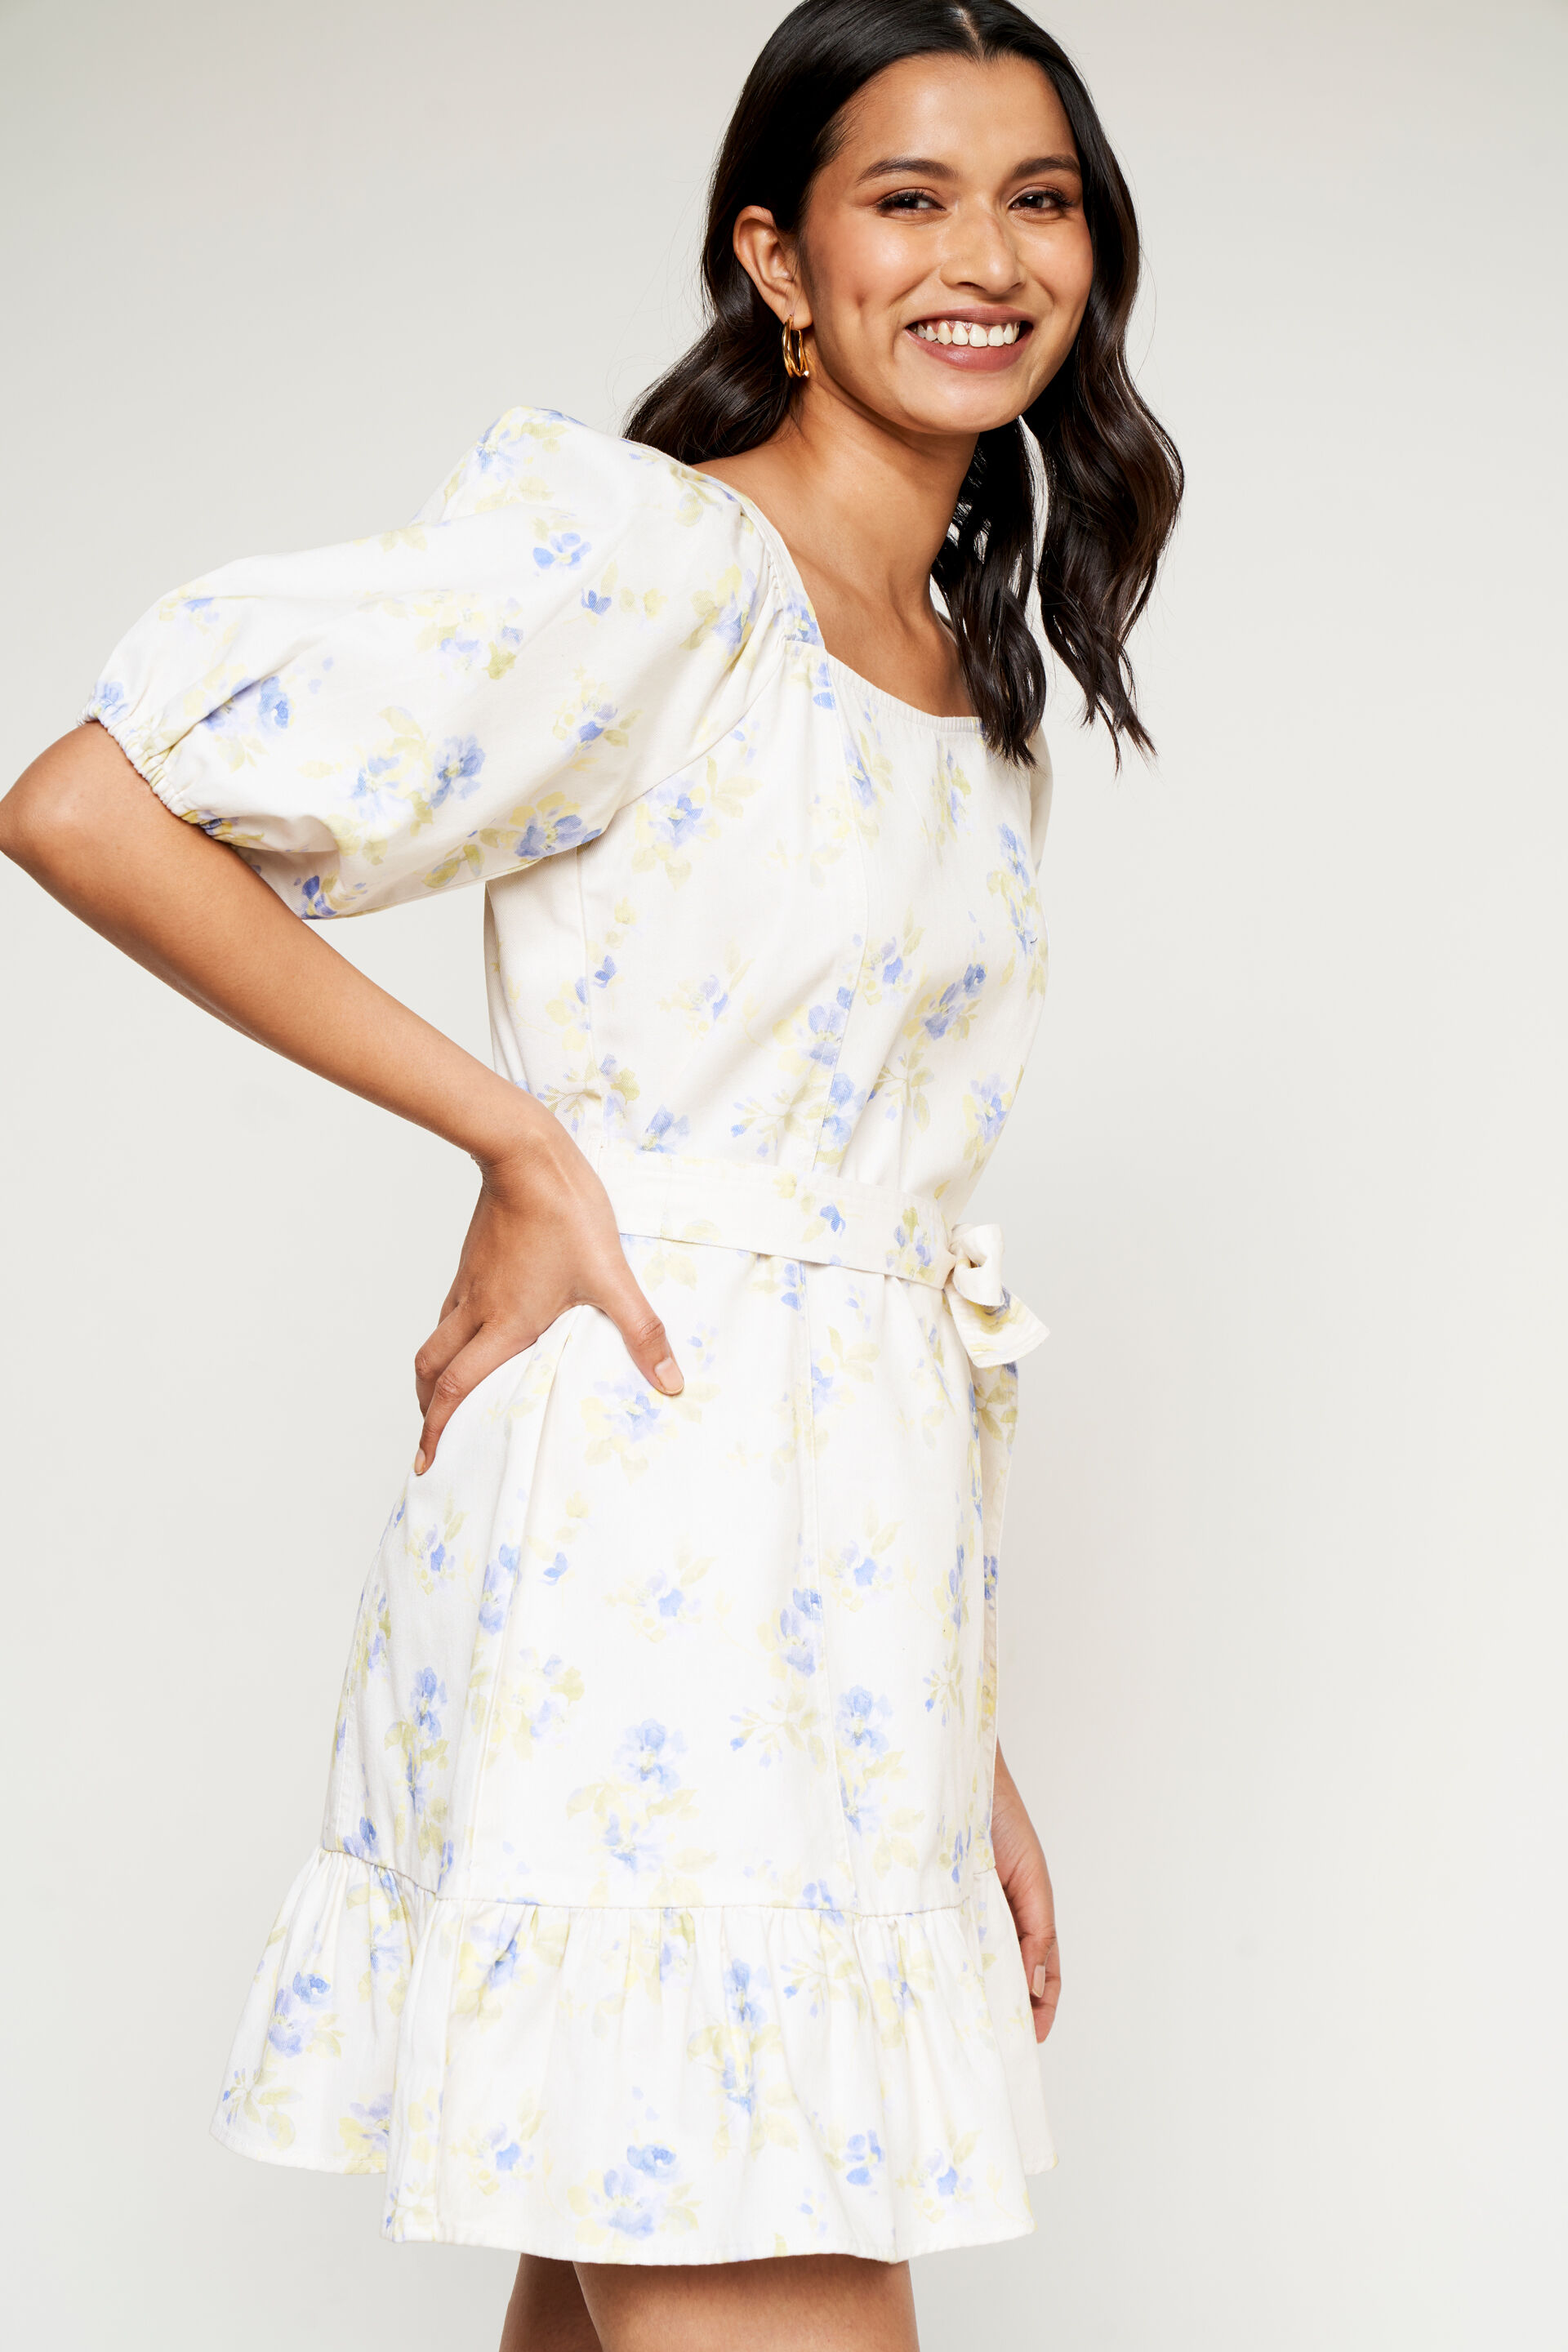 Dresses for Women | Best Women's Dresses Online - Lulus | Maxi dress, Cream  maxi dress, Flowy summer dresses